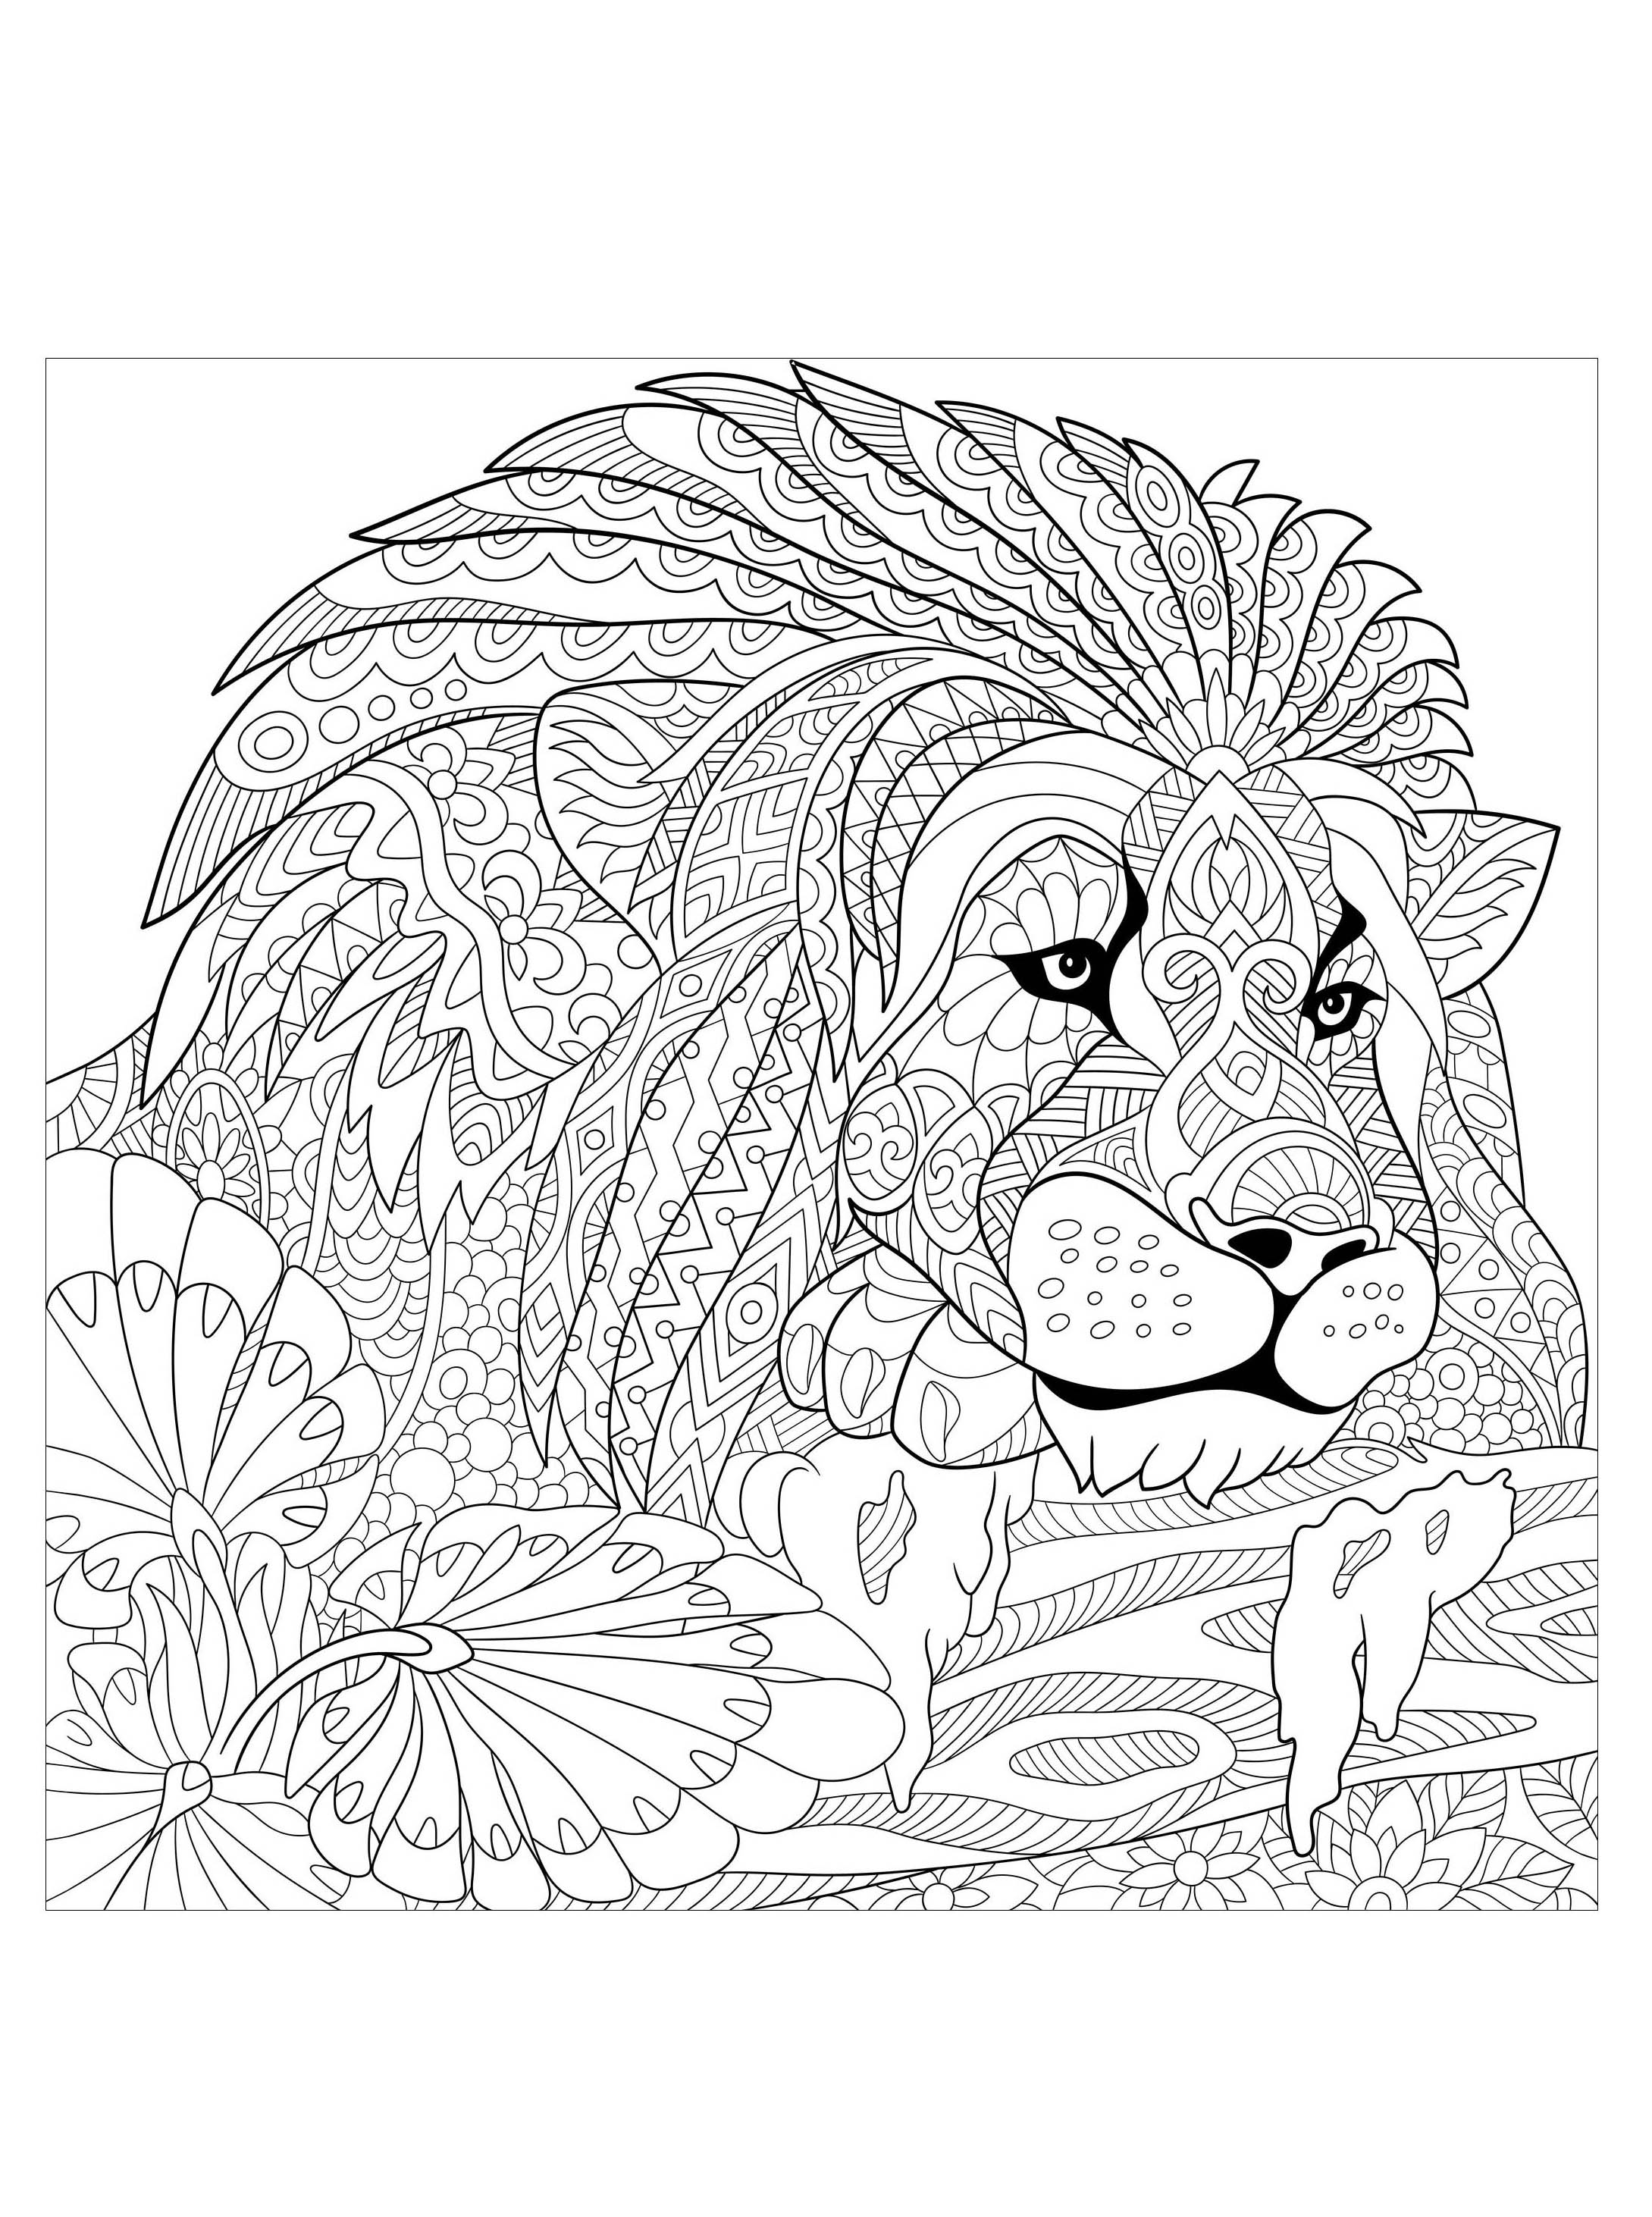 Disegni da colorare per adulti : Lions - 3, Artista : Sybirko   Fonte : 123rf